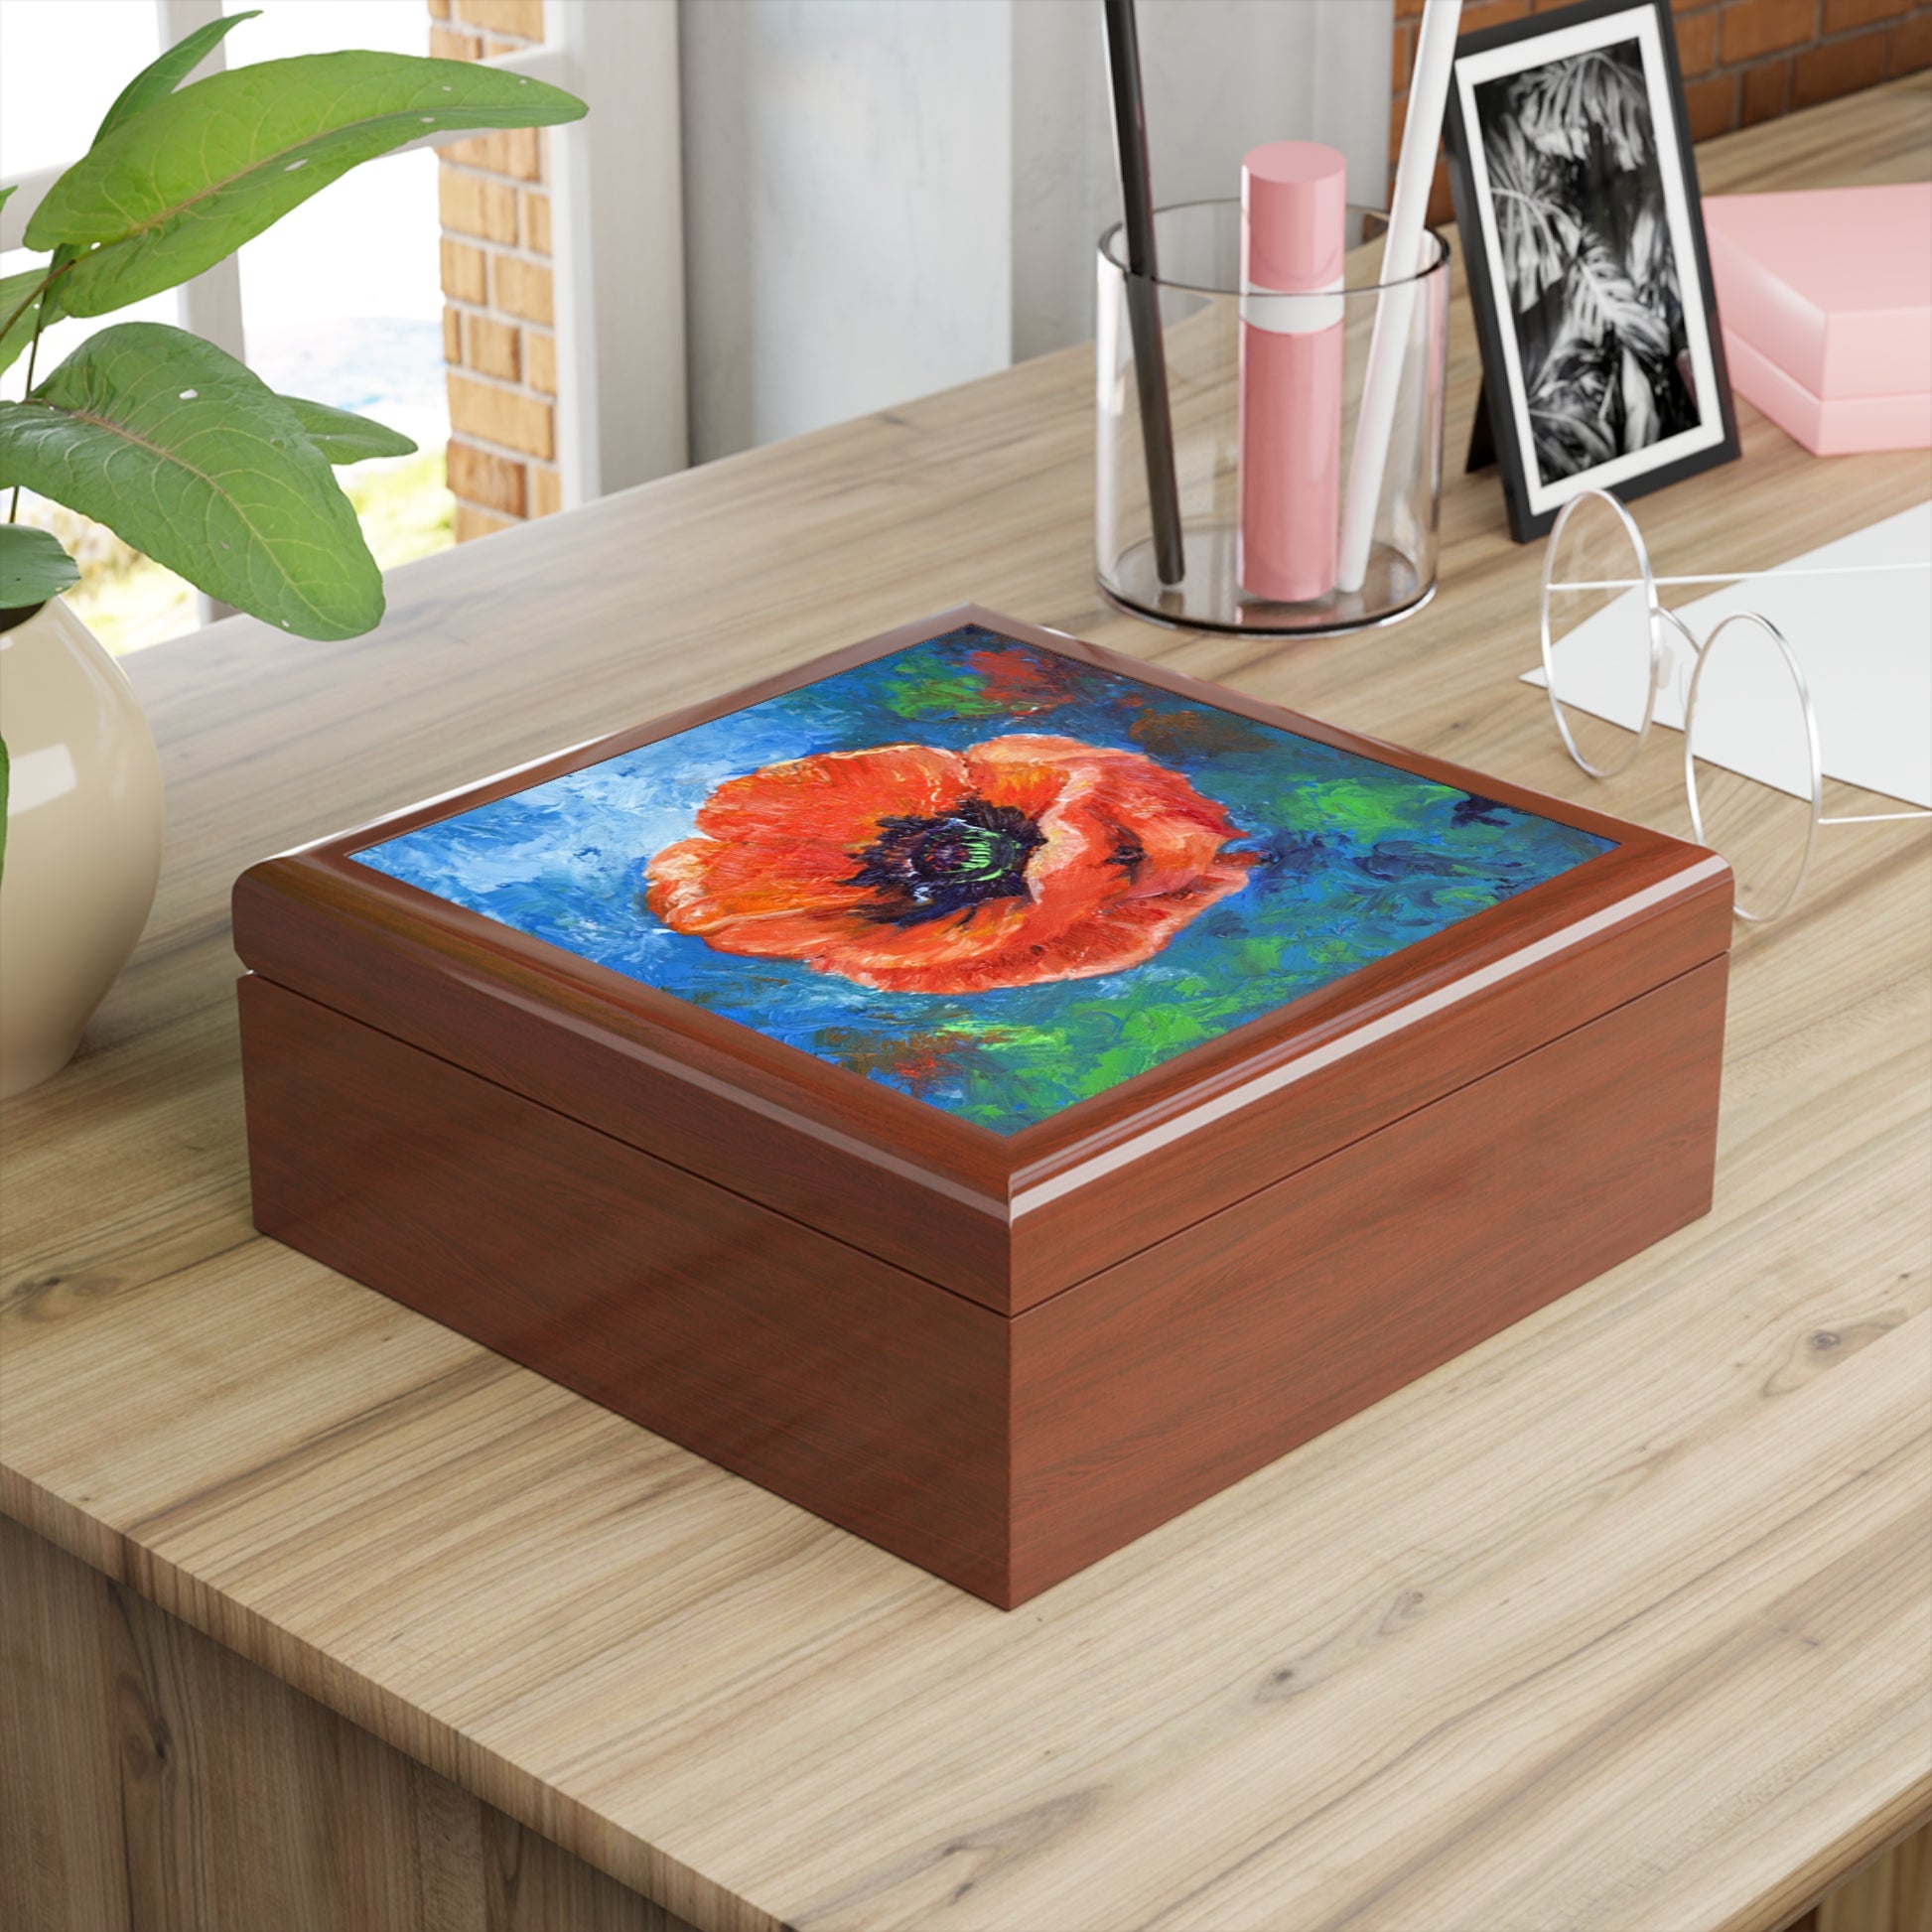 Keepsake/Jewelry Box - Poppy Flower Ceramic Tile Lid golden oak